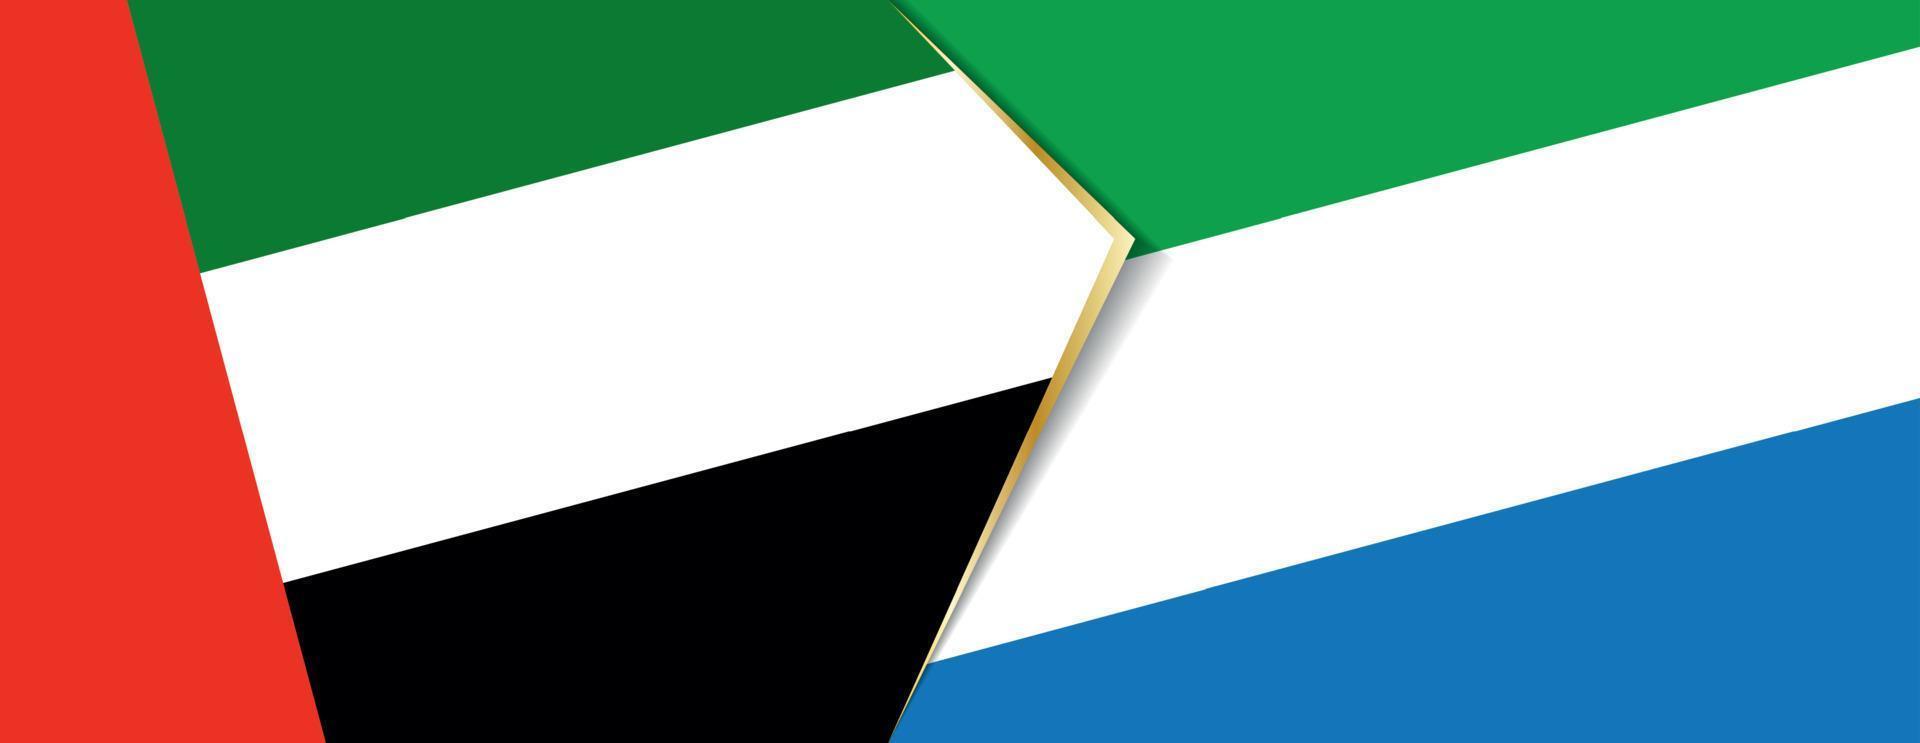 unito arabo Emirates e sierra Leone bandiere, Due vettore bandiere.